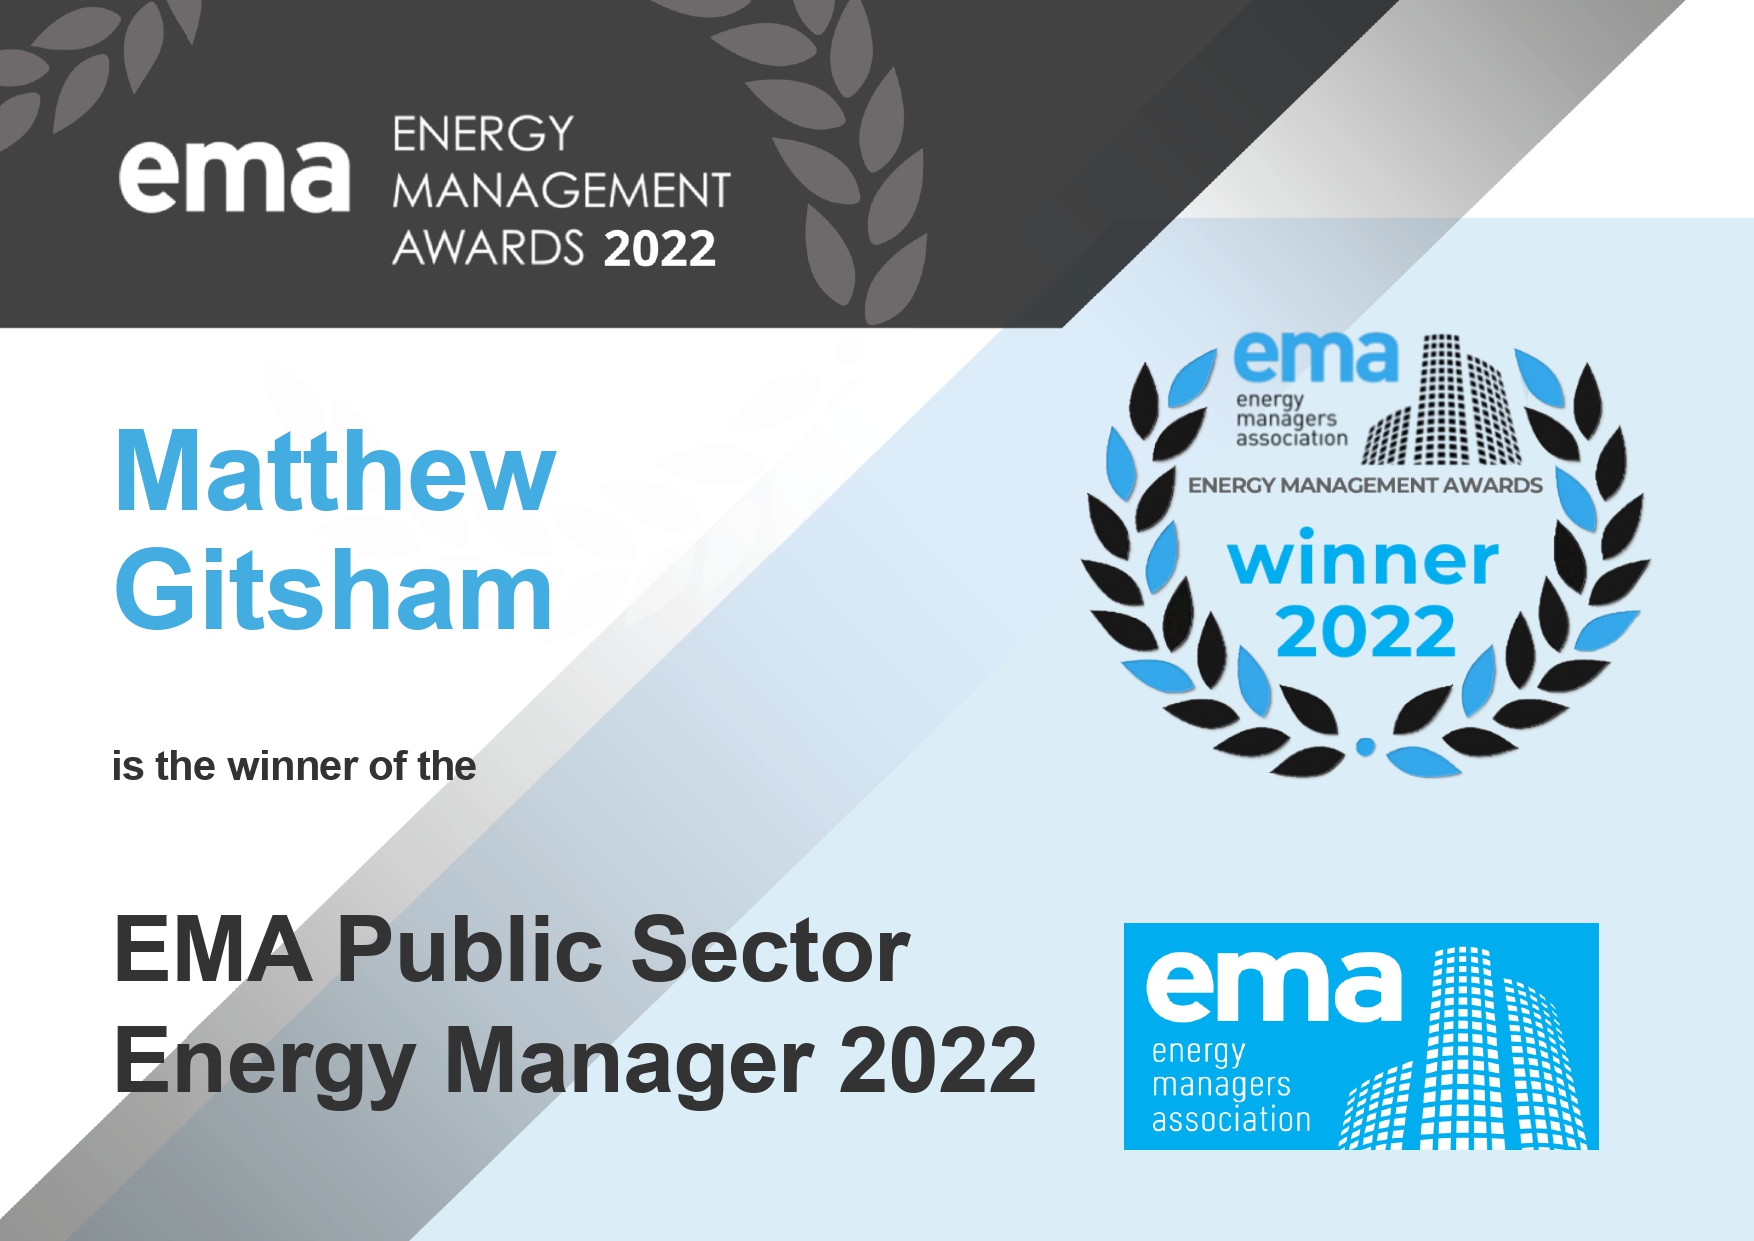 EMA Energy Manager 2022 winner